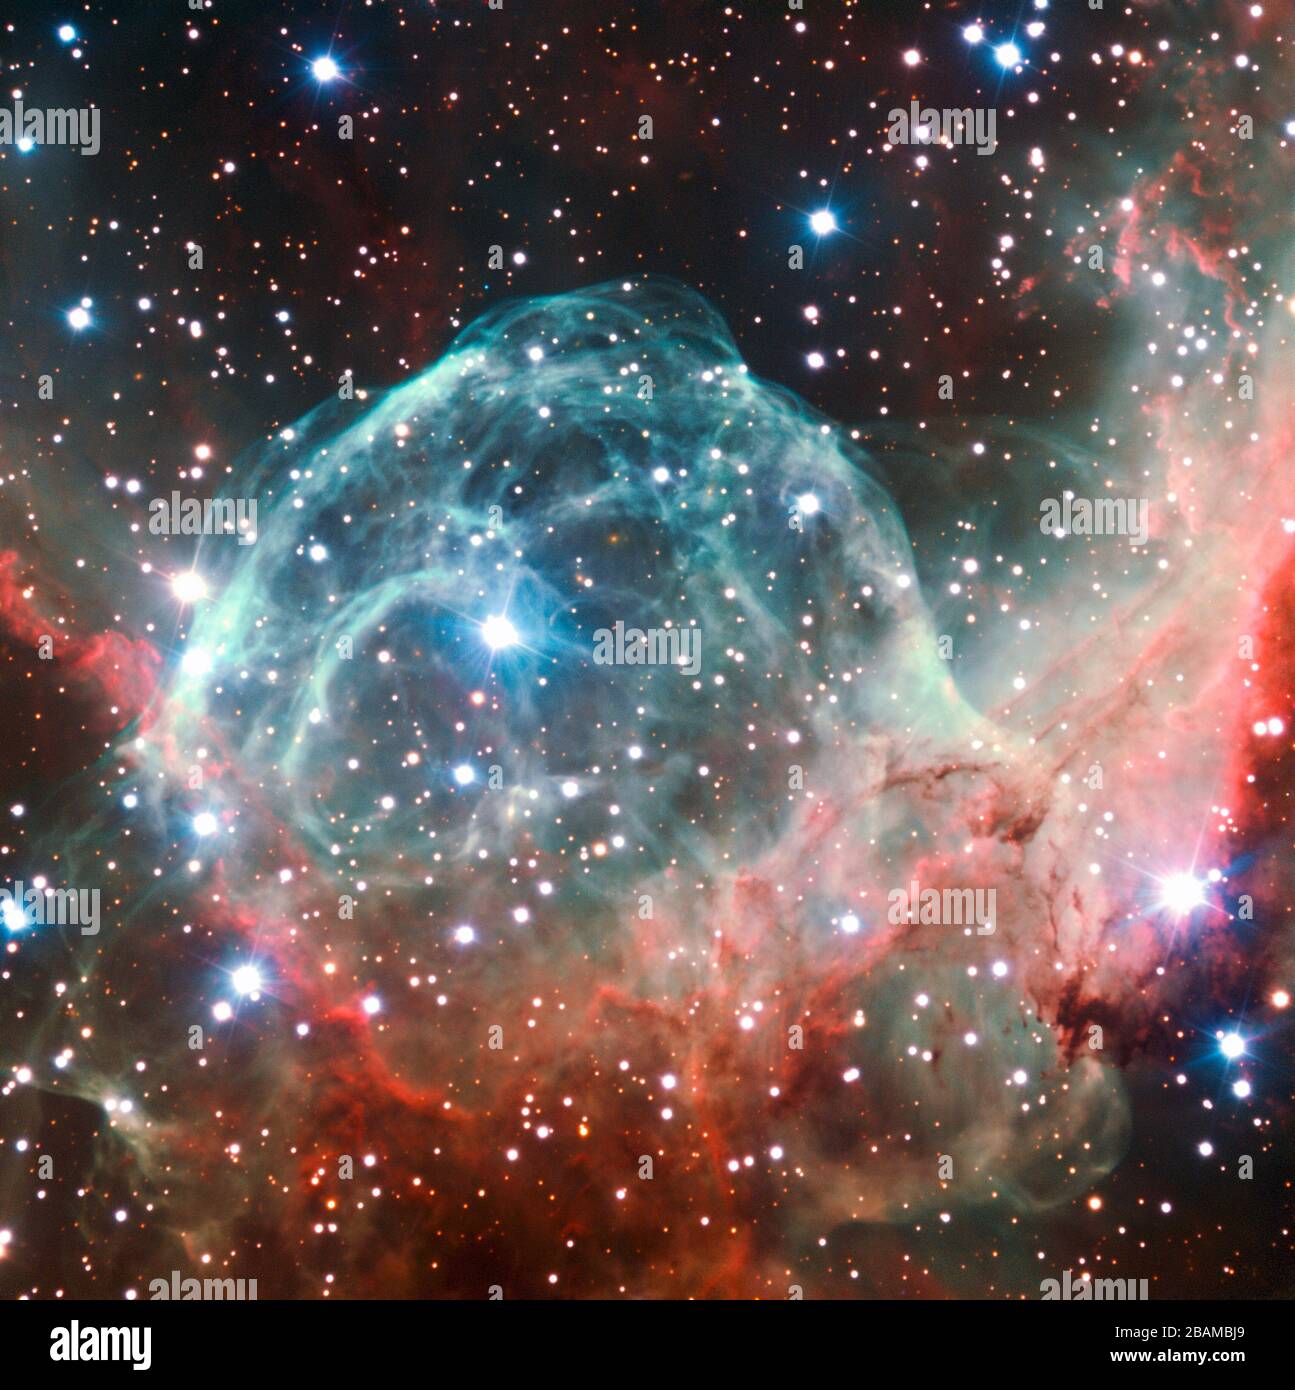 'Inglés: Esta imagen de VLT del Casco Nebulosa de Thor fue tomada con ocasión del 50 aniversario de eso, 5 de octubre de 2012, con la ayuda de Brigitte Bailleul — ganador del Tweet ¡tu camino al VLT! competencia. Las observaciones se transmitieron en directo a través de Internet desde el Observatorio Paranal de Chile. Este objeto, también conocido como NGC 2359, se encuentra en la constelación de Canis Major (el Gran Perro). La nebulosa con forma de casco está a unos 15 000 años luz de la Tierra y tiene más de 30 años luz. El casco es una burbuja cósmica, soplada como el viento de la brillante y masiva estrella cerca del bubbl Foto de stock